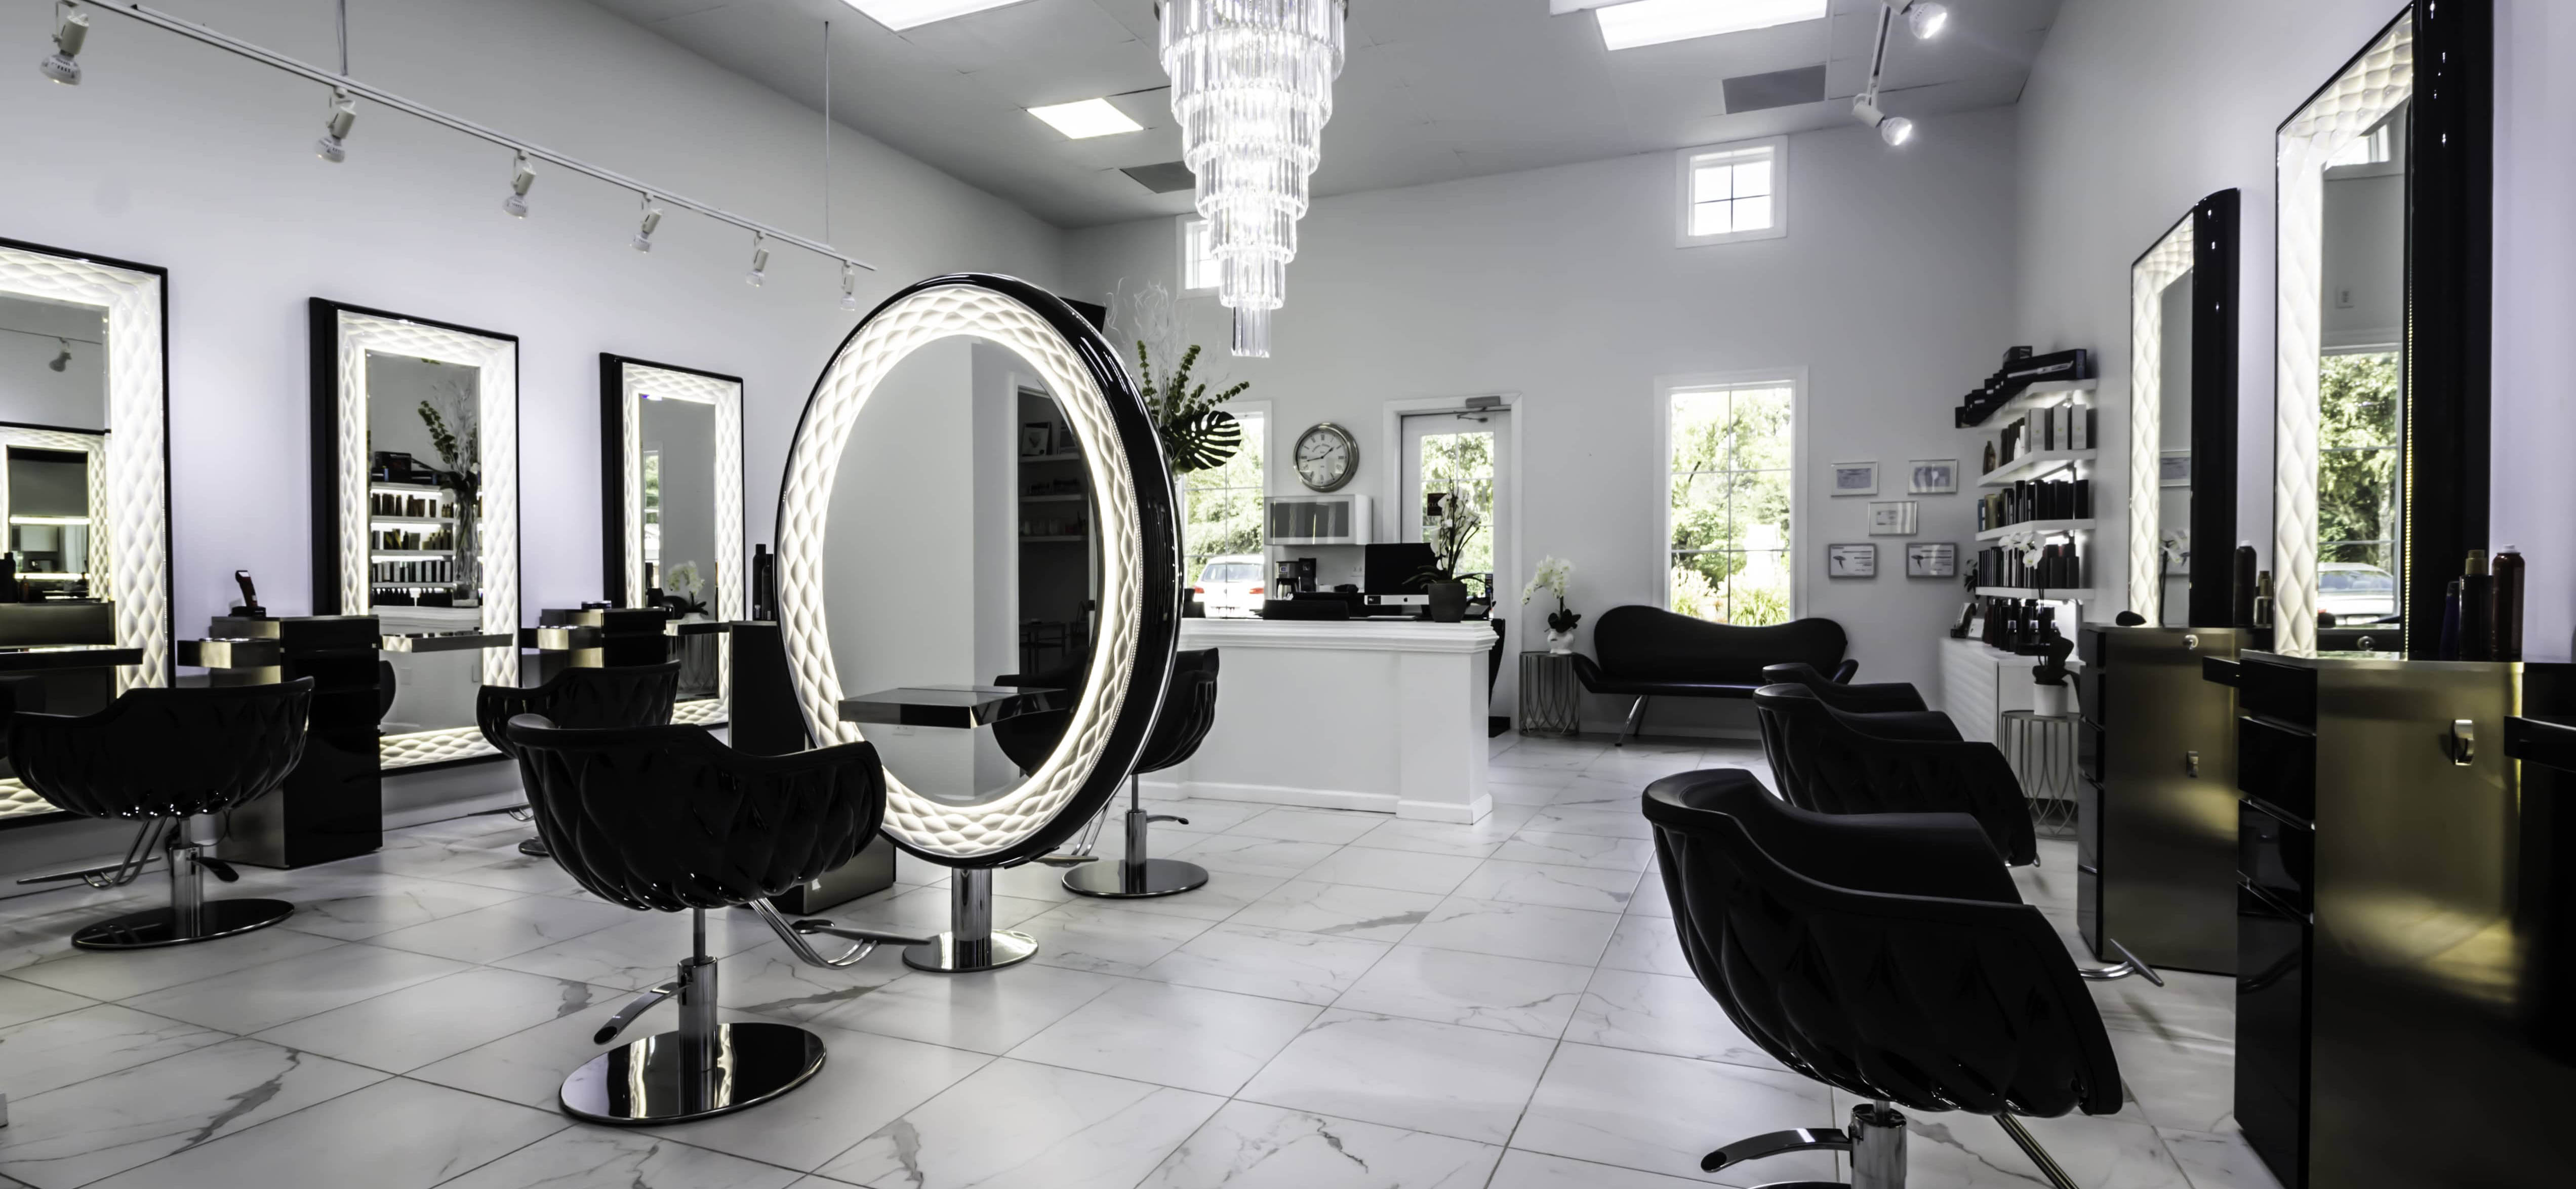 Beauty Salon - Seat, Mirror, Modern